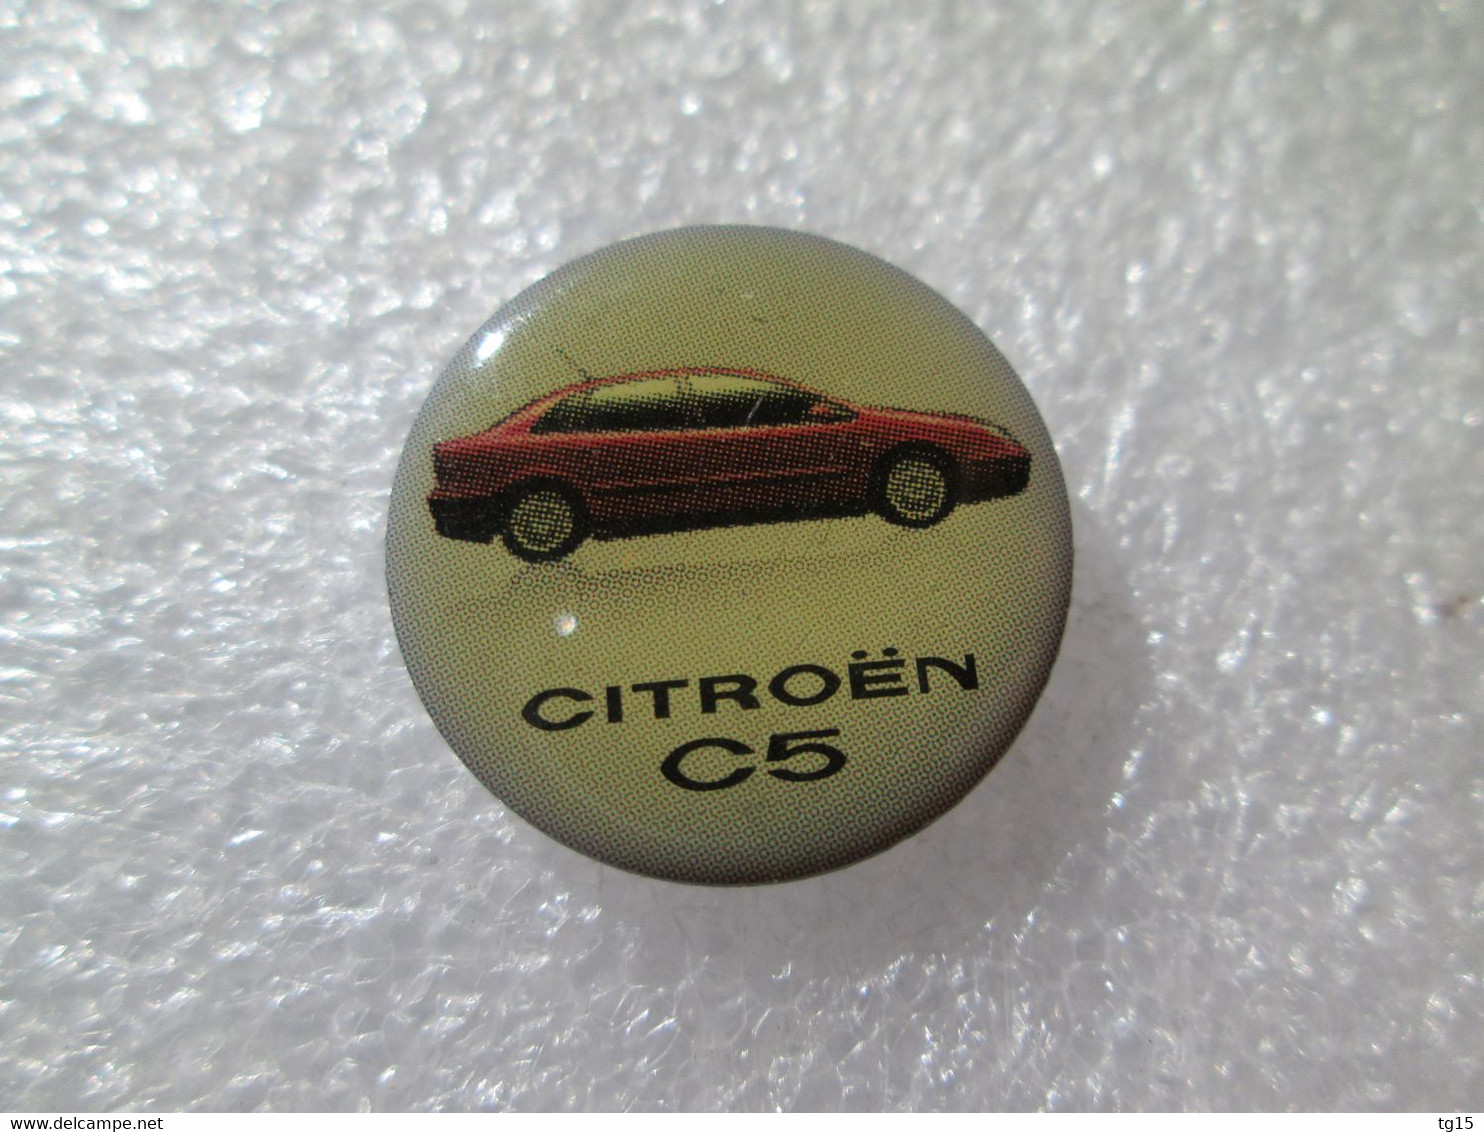 PIN'S    CITROËN   C  5 - Citroën